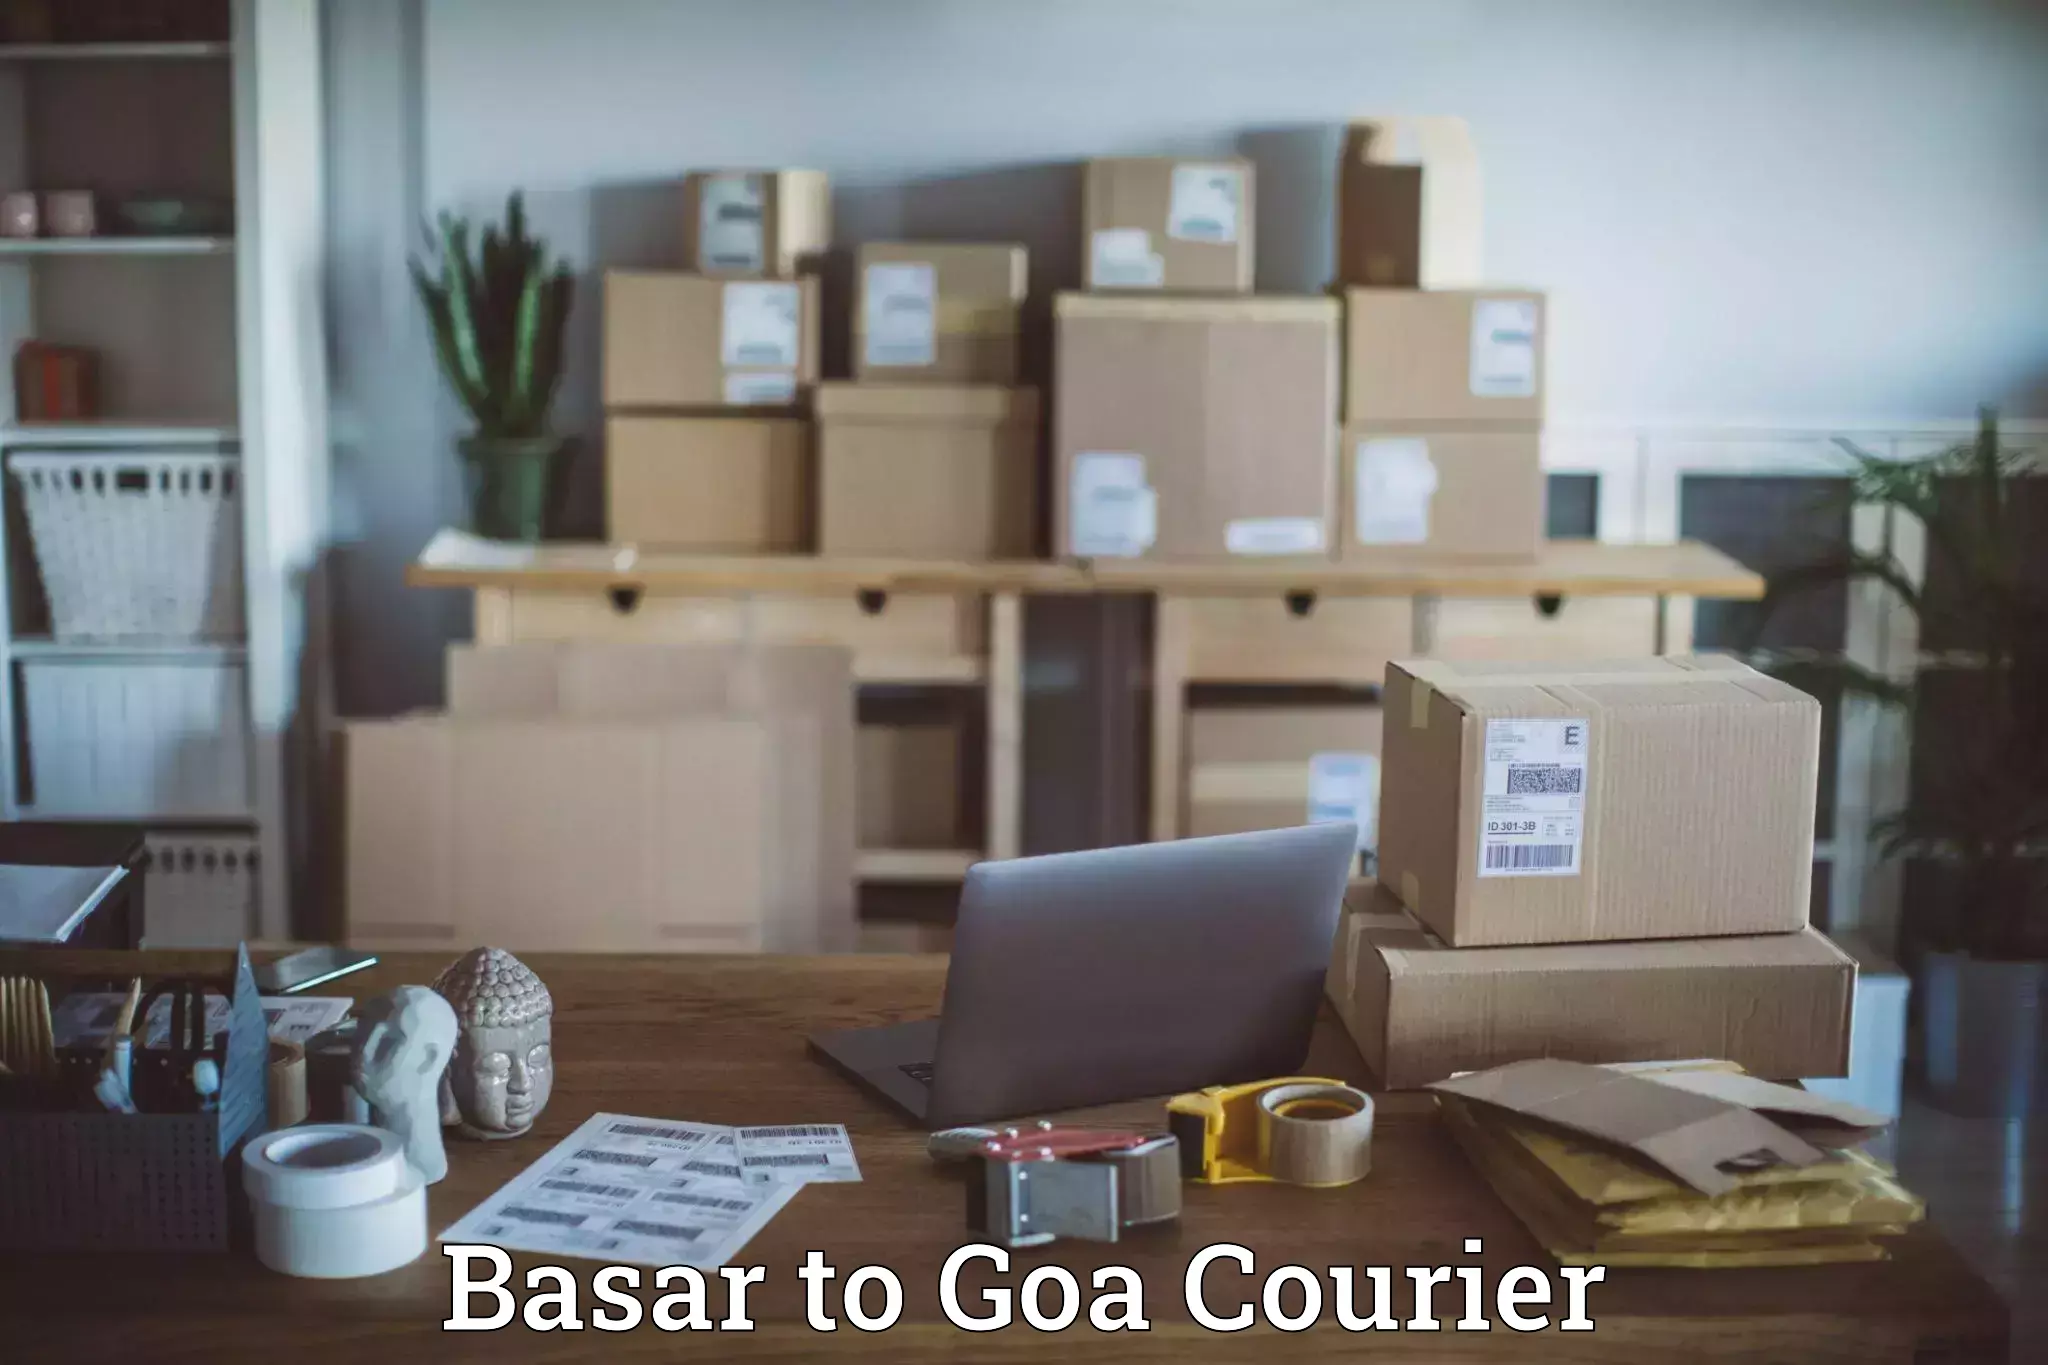 Comprehensive freight services Basar to Goa